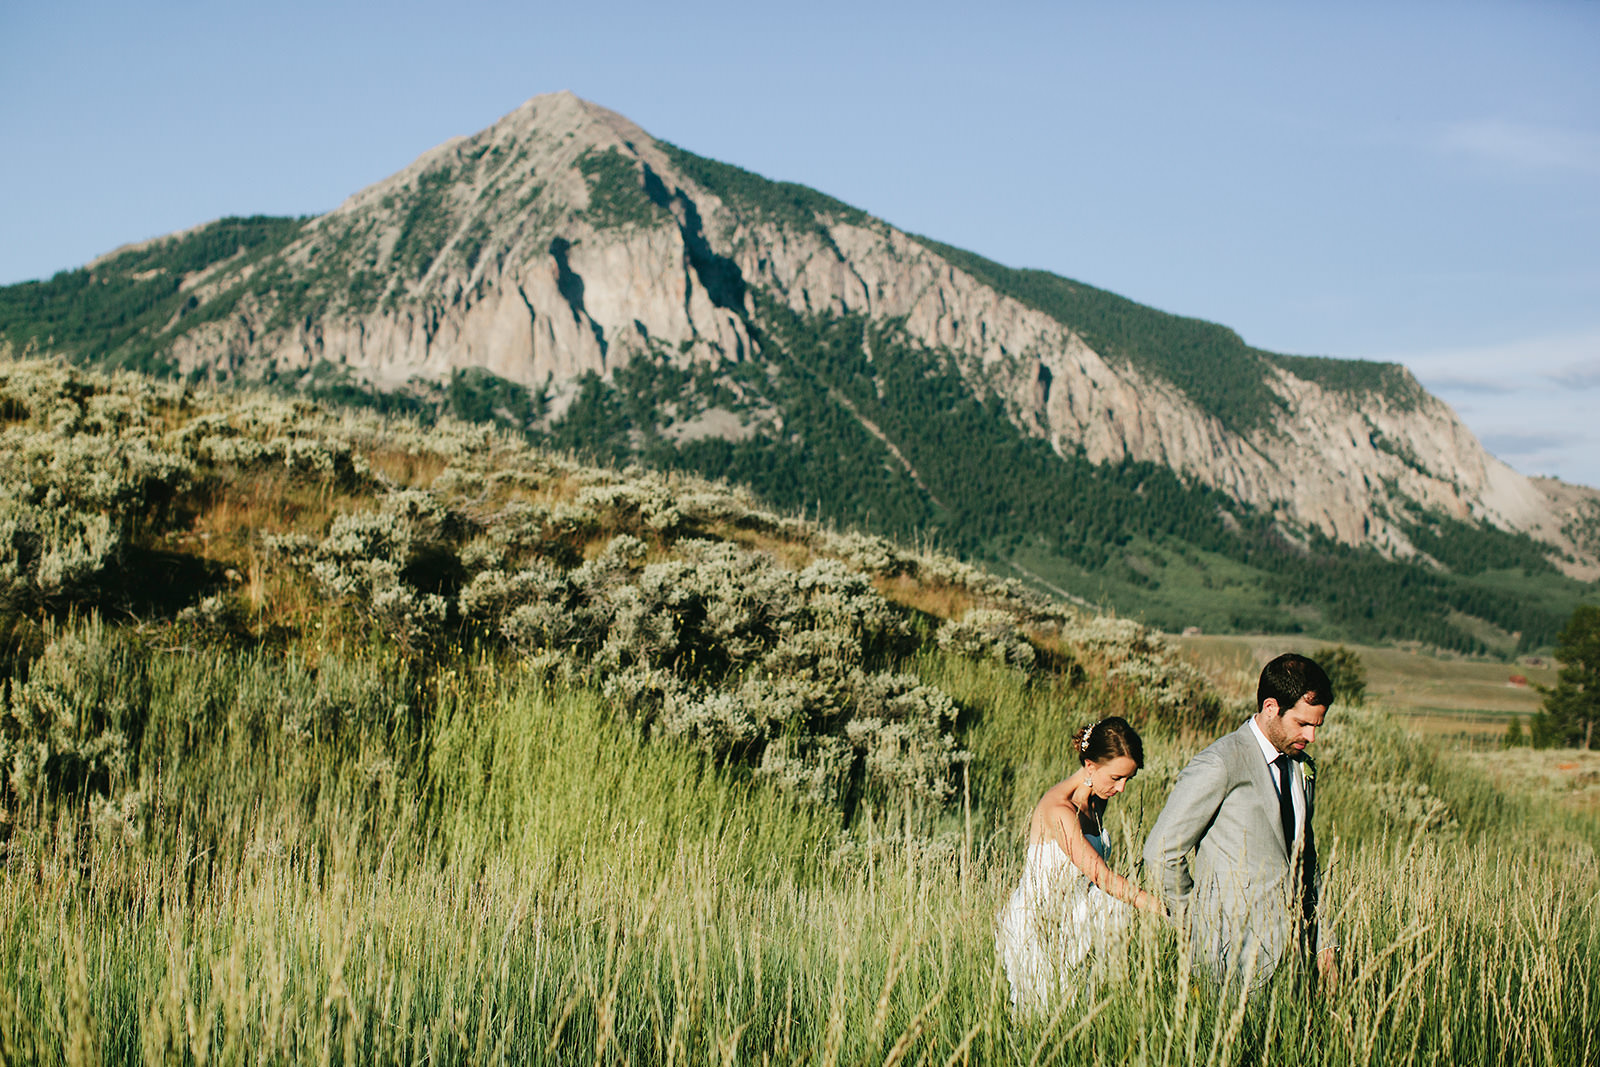 mountain weddings